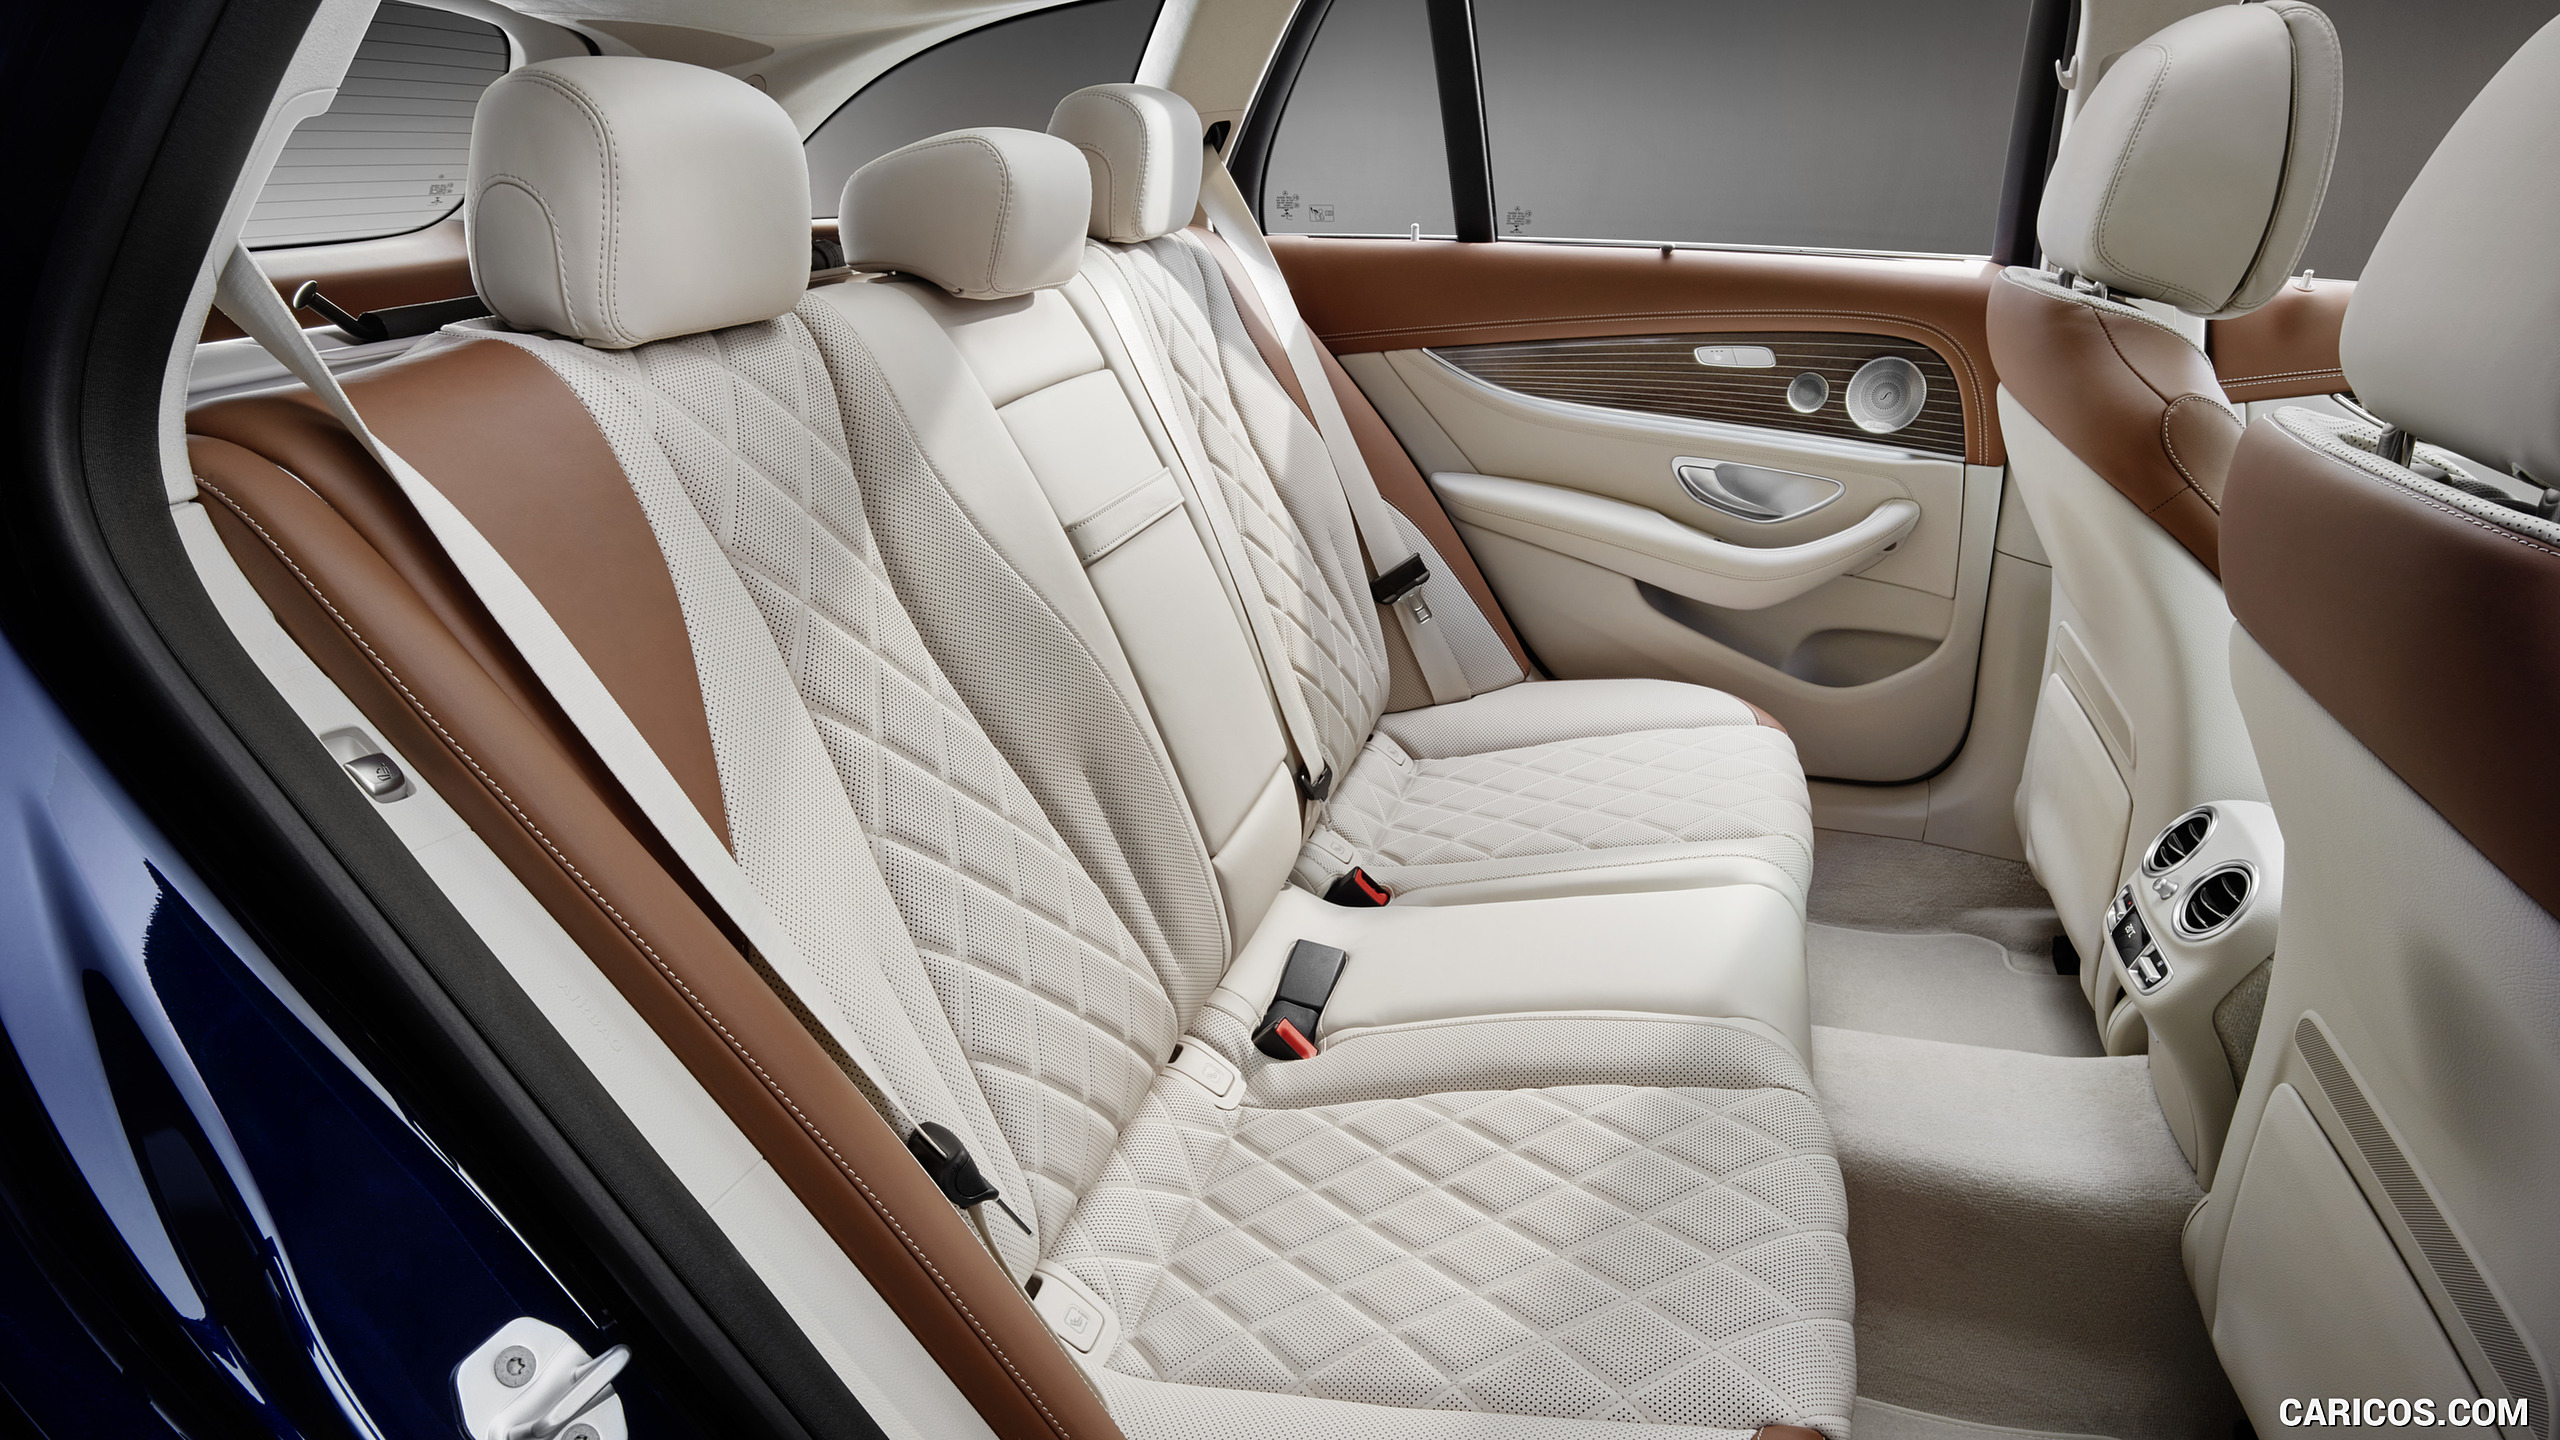 2017 Mercedes-Benz E-Class Estate Exclusive Line - Macchiato Beige / Saddle Brown - Interior, Rear Seats, #51 of 110